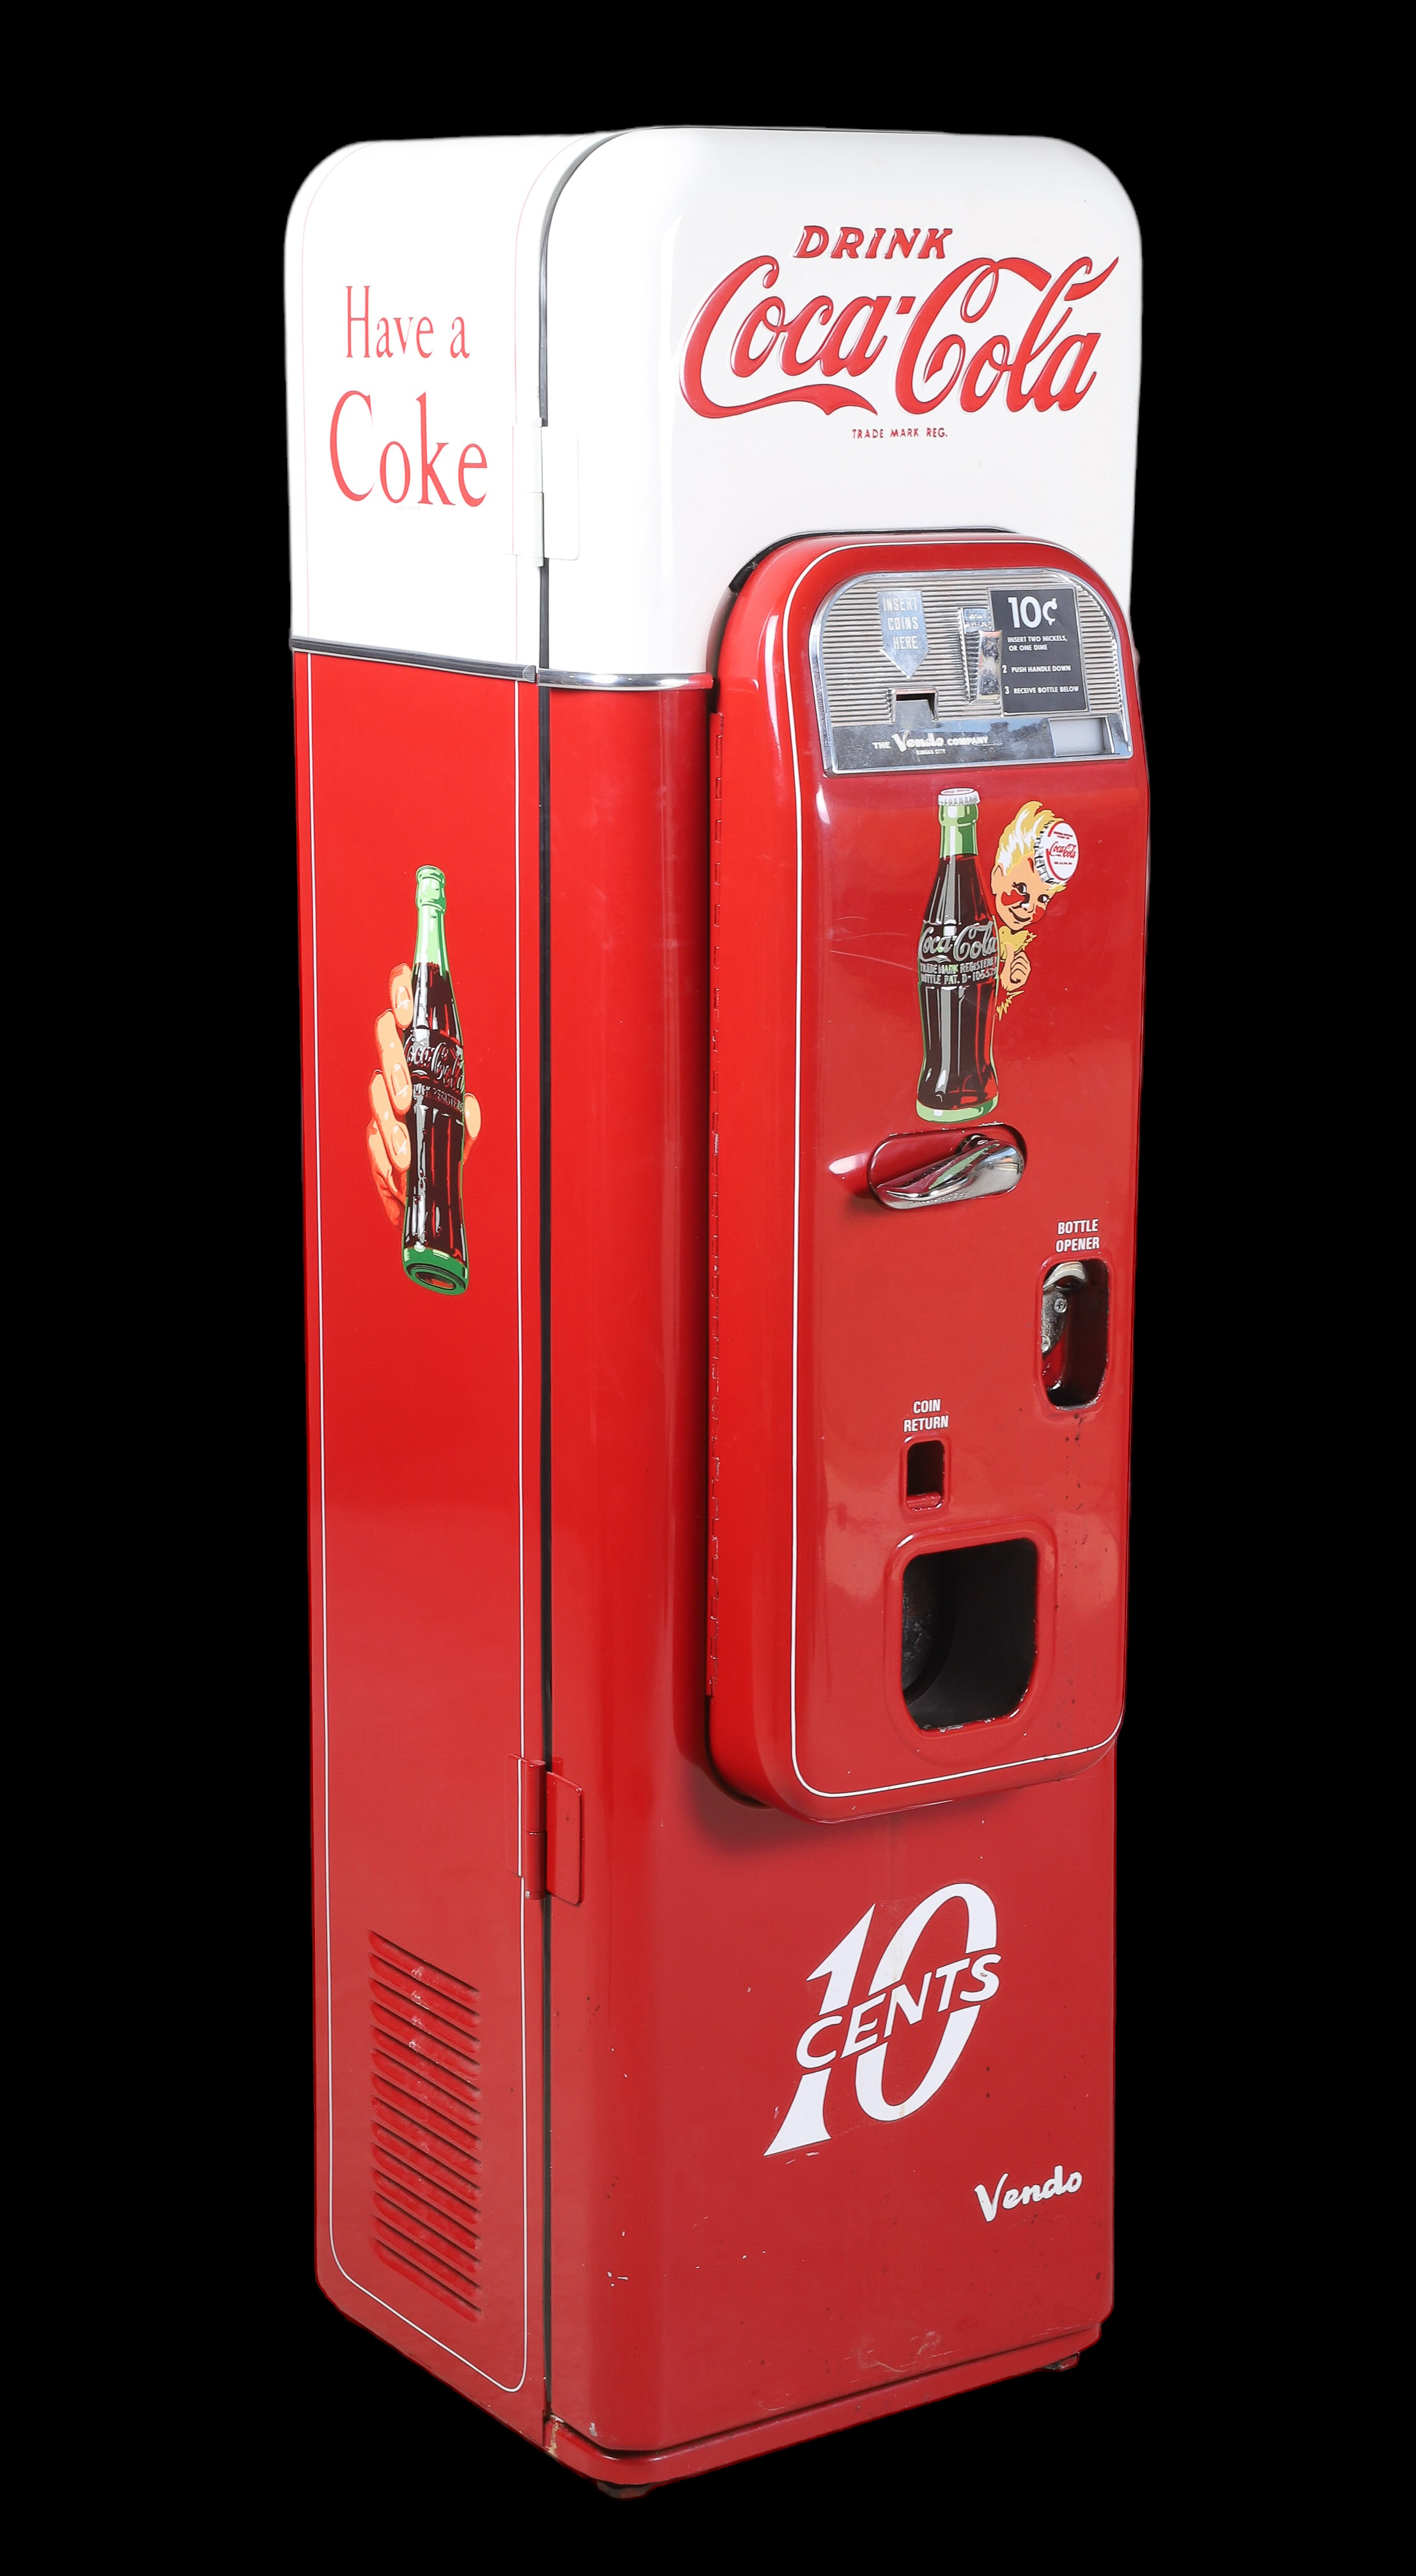 Model 44 Coca Cola 10 cent vending